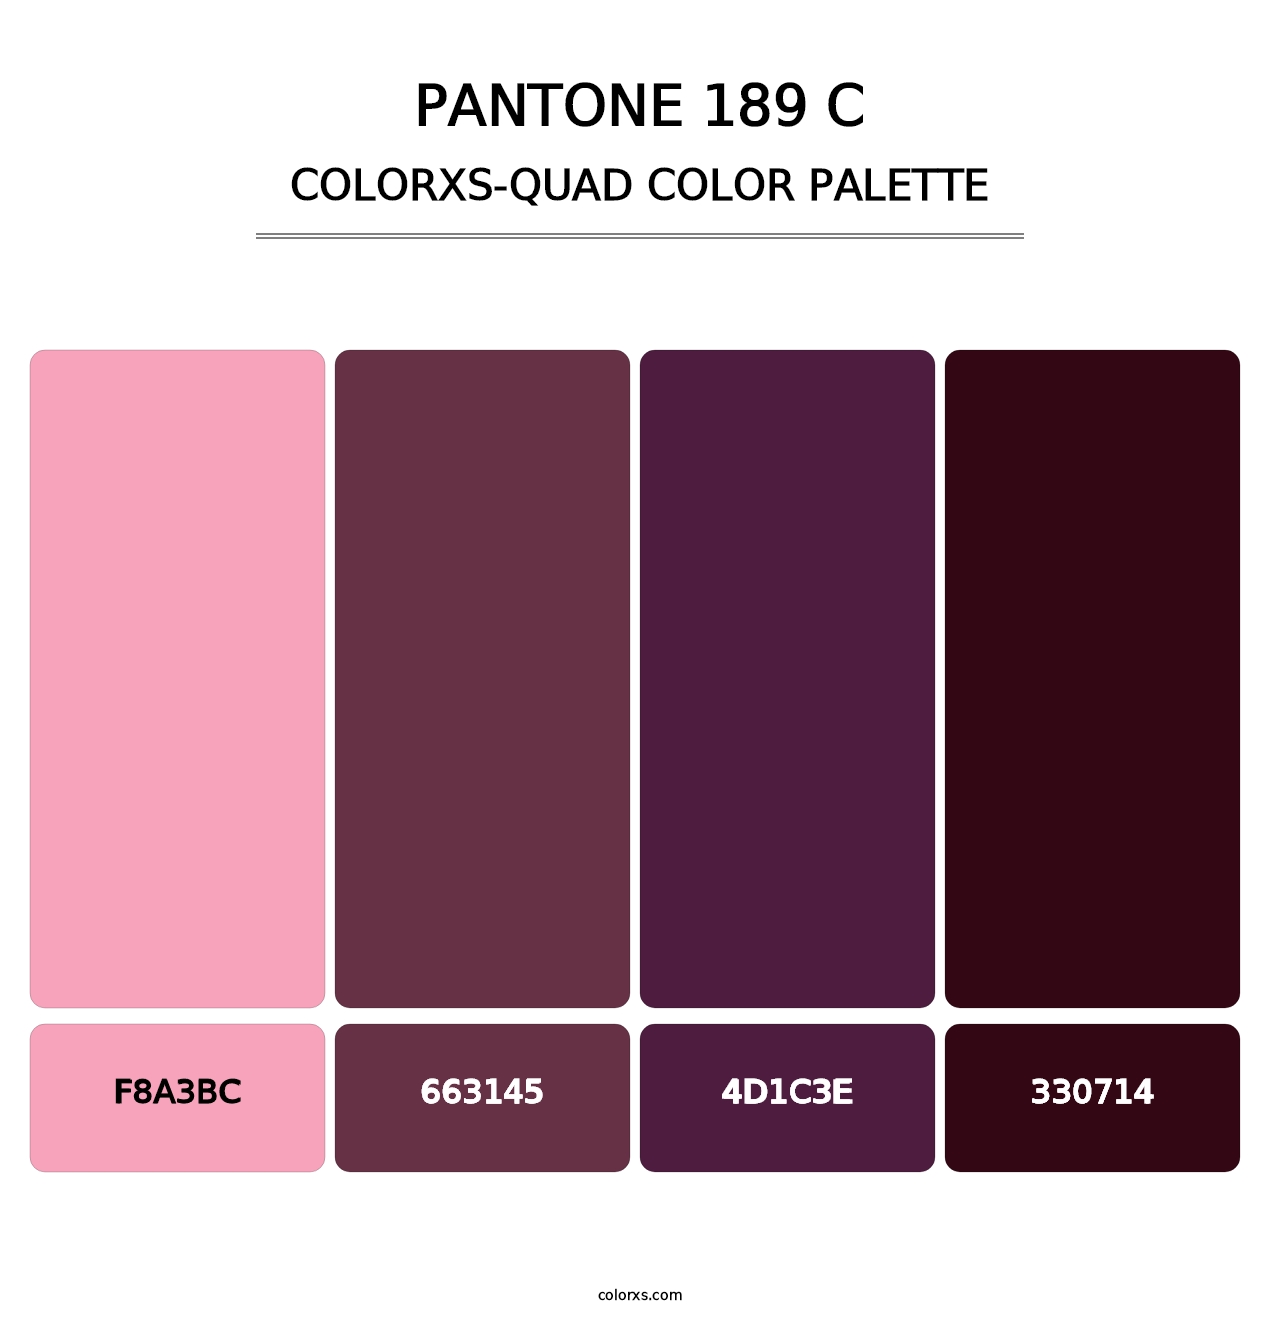 PANTONE 189 C - Colorxs Quad Palette